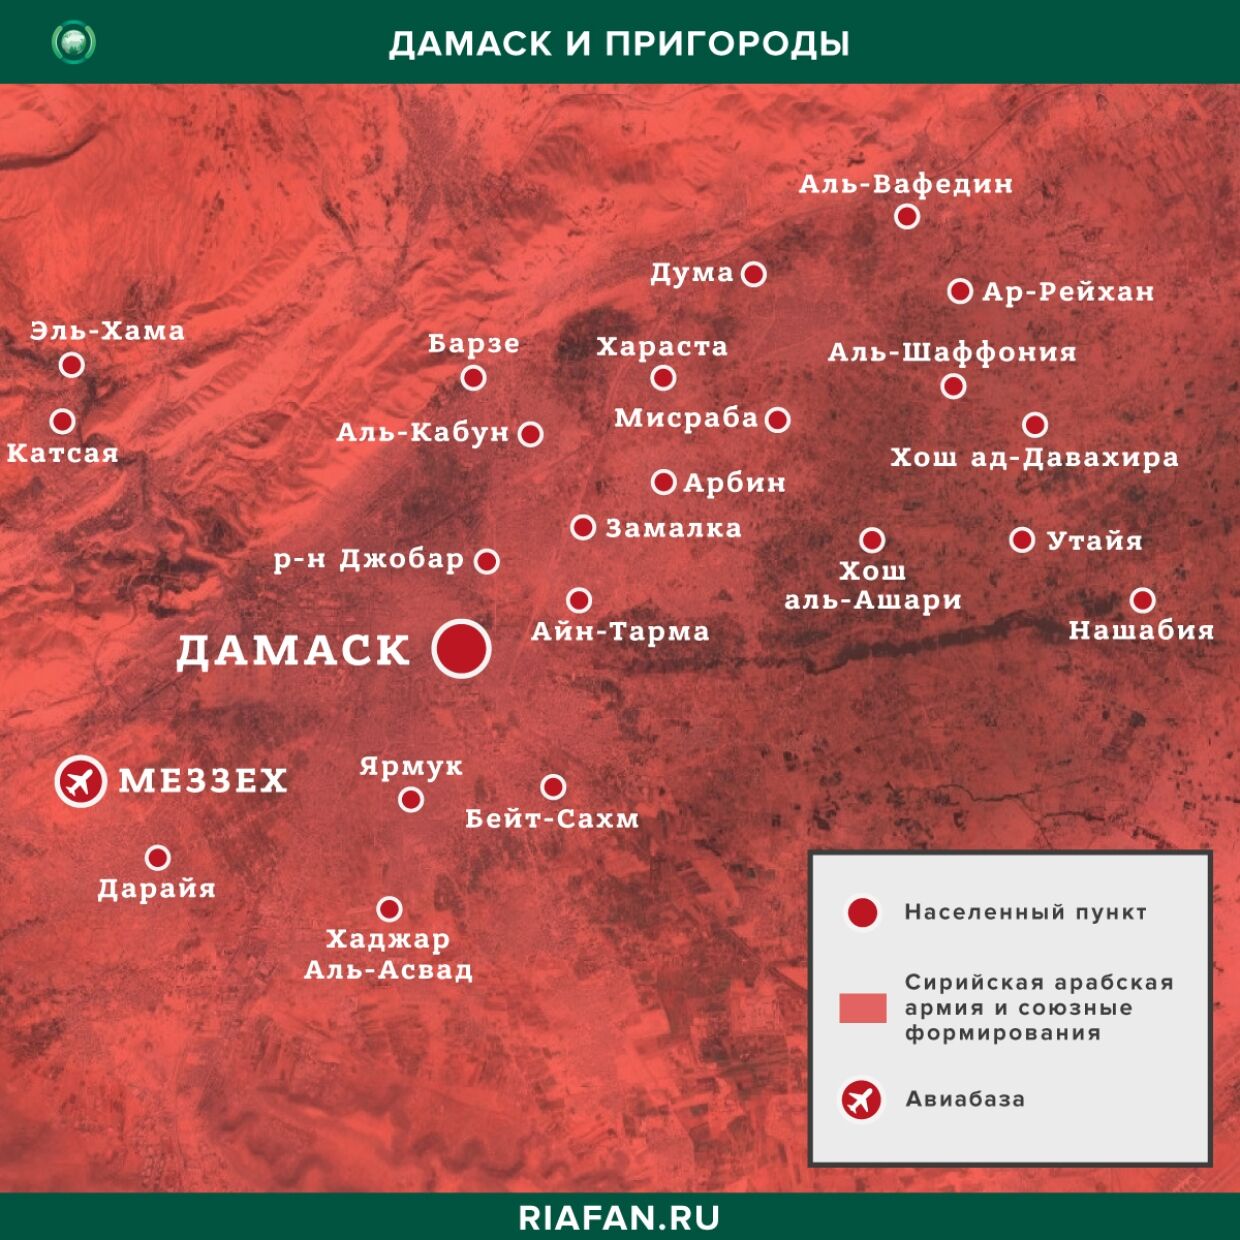 Nouvelles de Syrie 26 Peut 12.30: provocations de militants à Idlib, Дамаск отменяет комендантский час